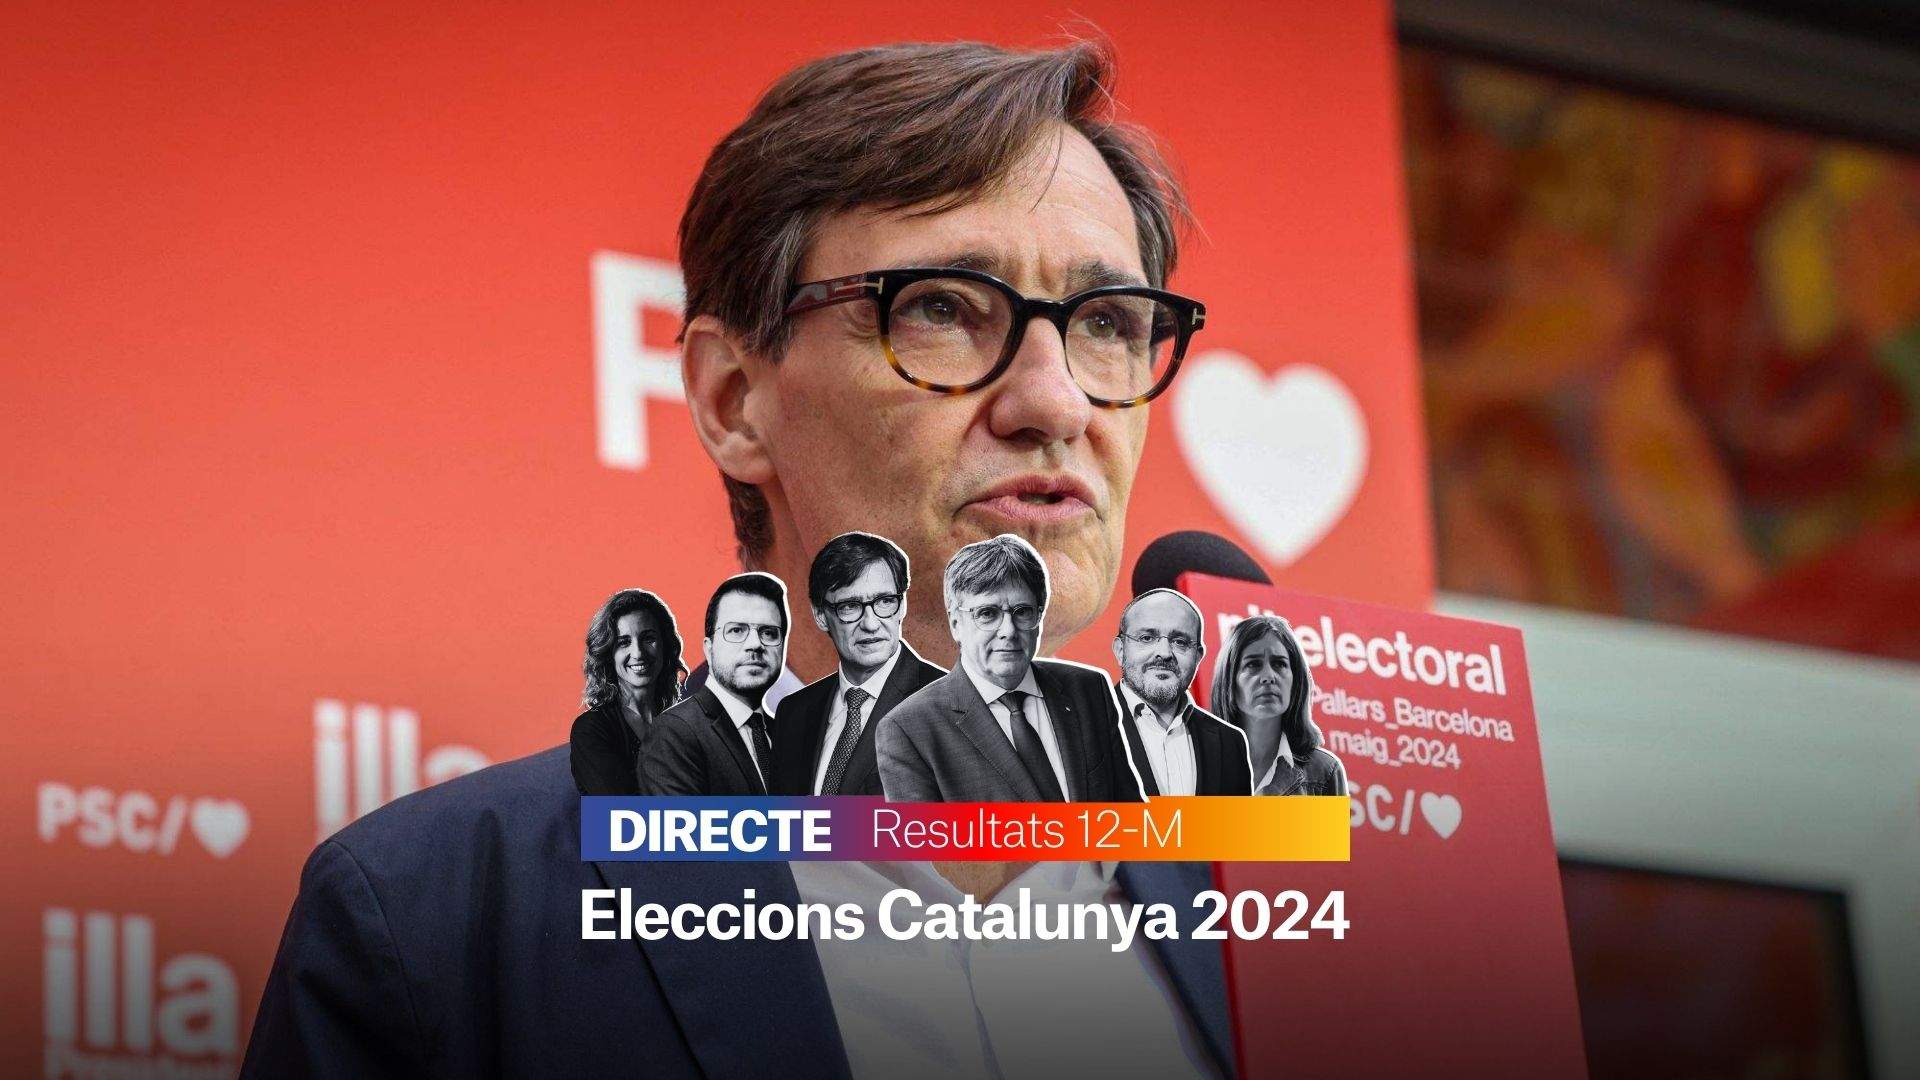 Resultats Eleccions Catalunya 2024, DIRECTE | Salvador Illa, guanyador del 12-M, útlima hora